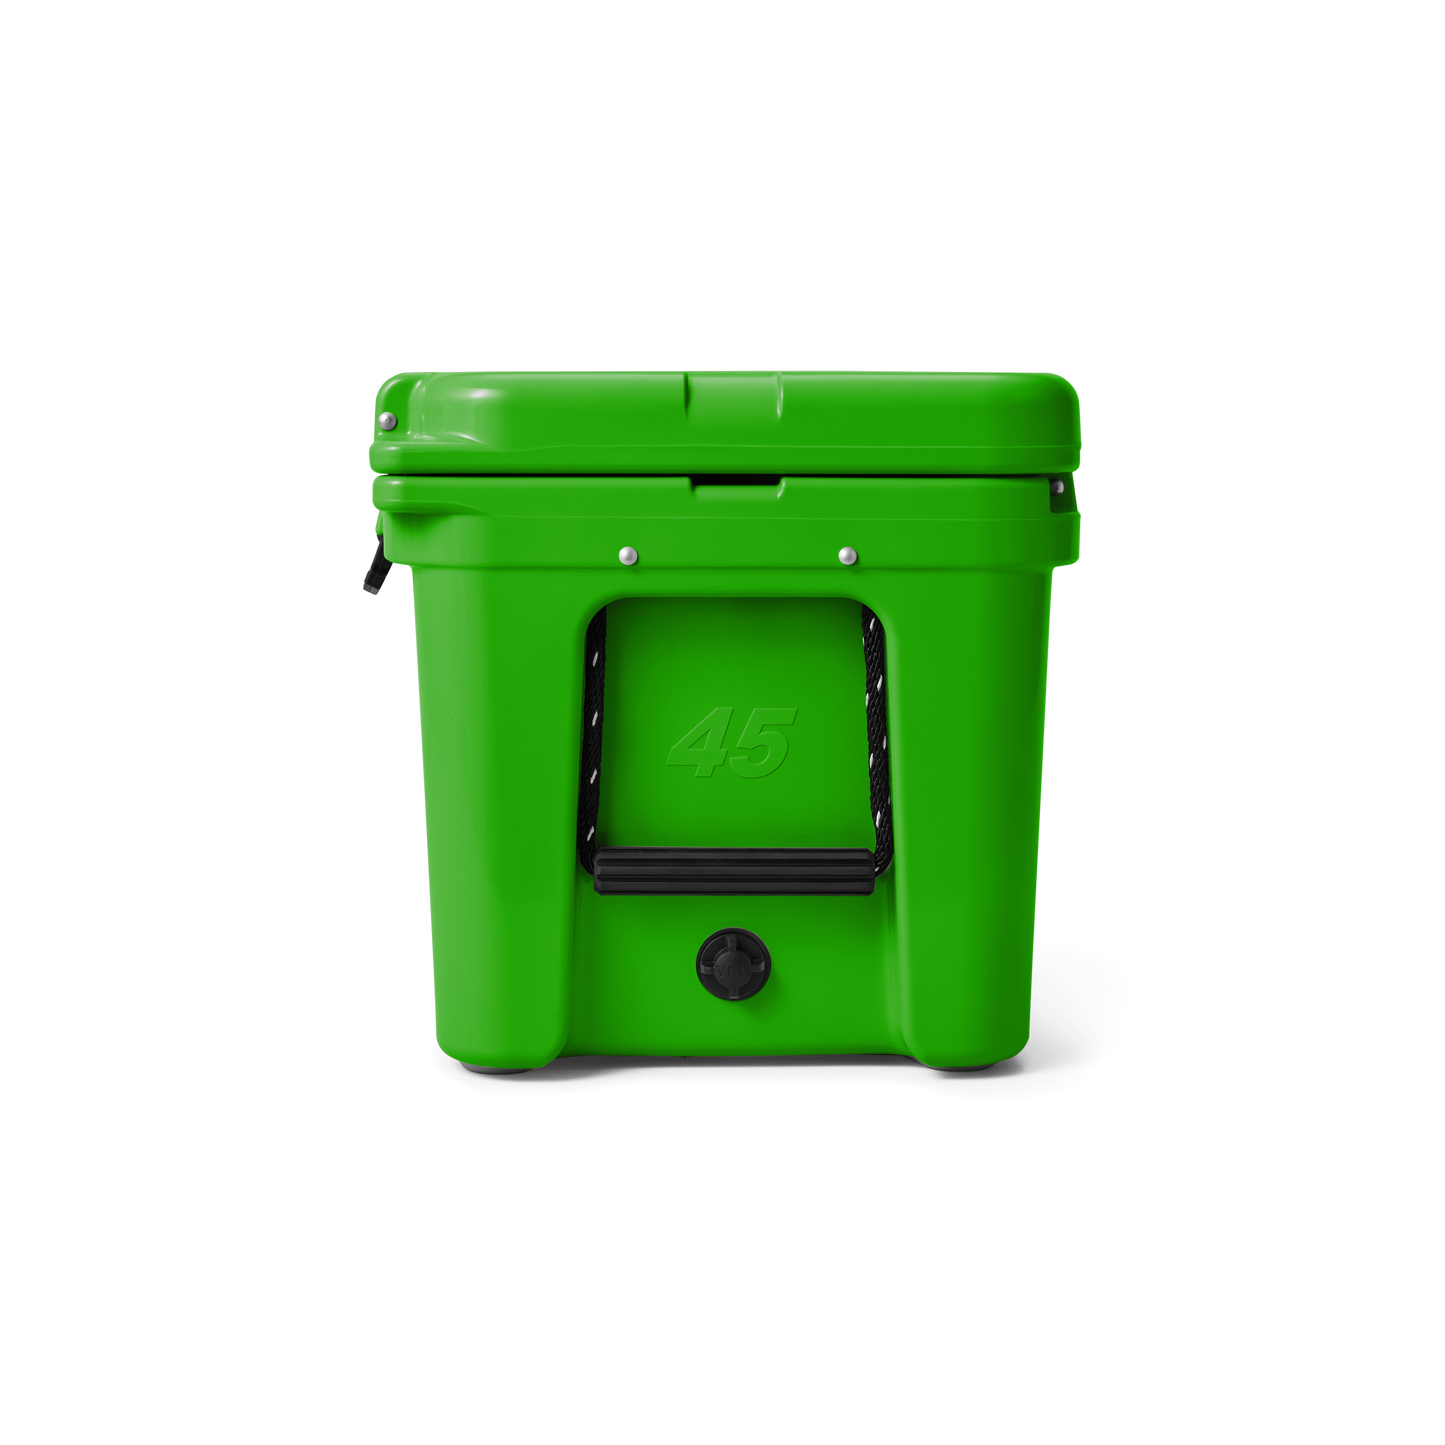 YETI Tundra® 45 Kühlbox Canopy Green